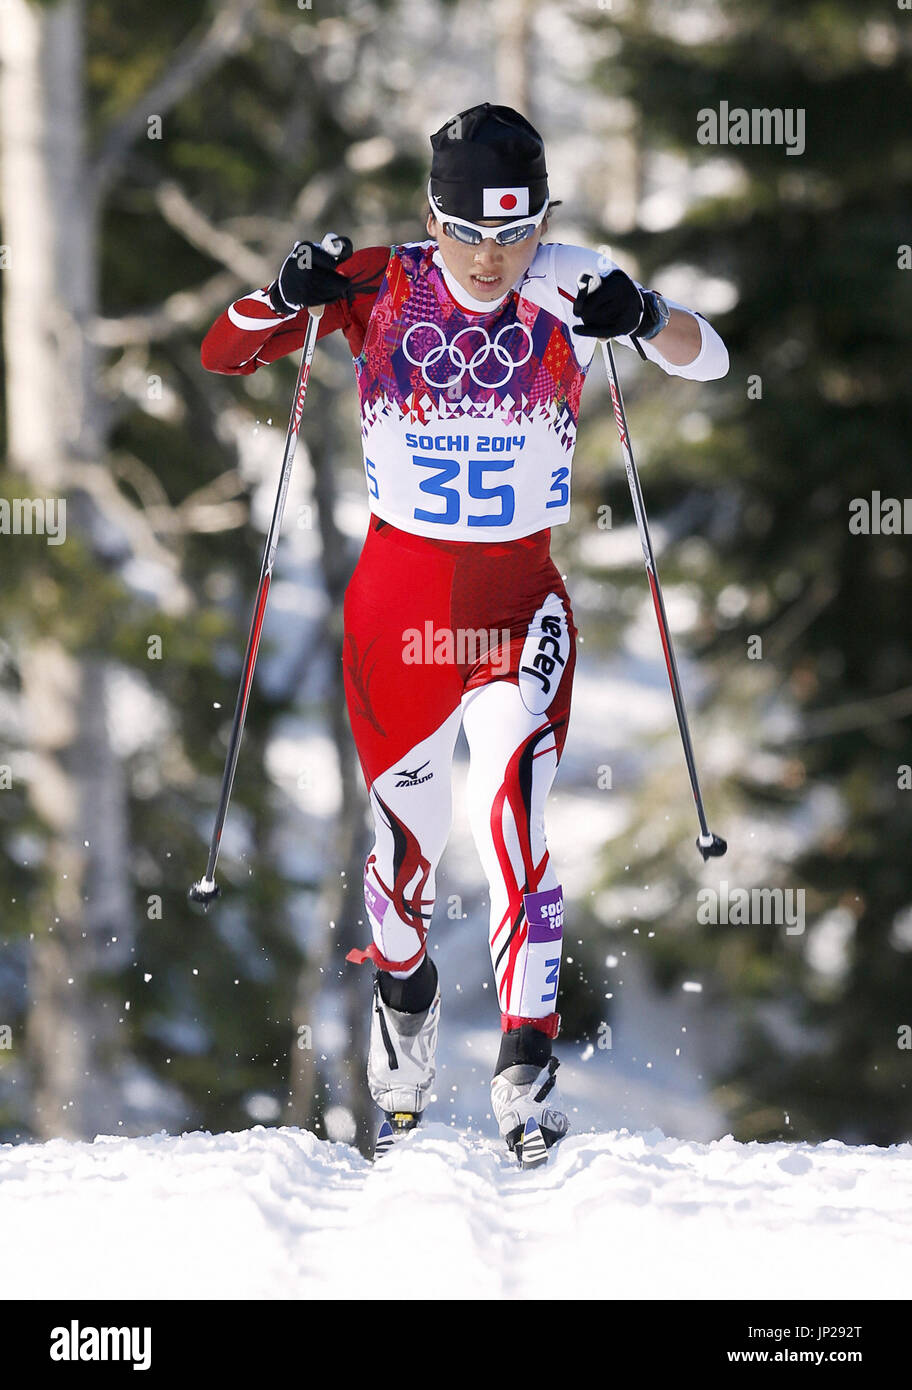 Sotchi, Russie - Masako Ishida de sprints en montée dans le japon women's Nordic Ski de fond 10 km classic à l'occasion des Jeux Olympiques d'hiver de 2014 à Sotchi le 13 février 2014. Elle a terminé 15e. (Kyodo) Banque D'Images